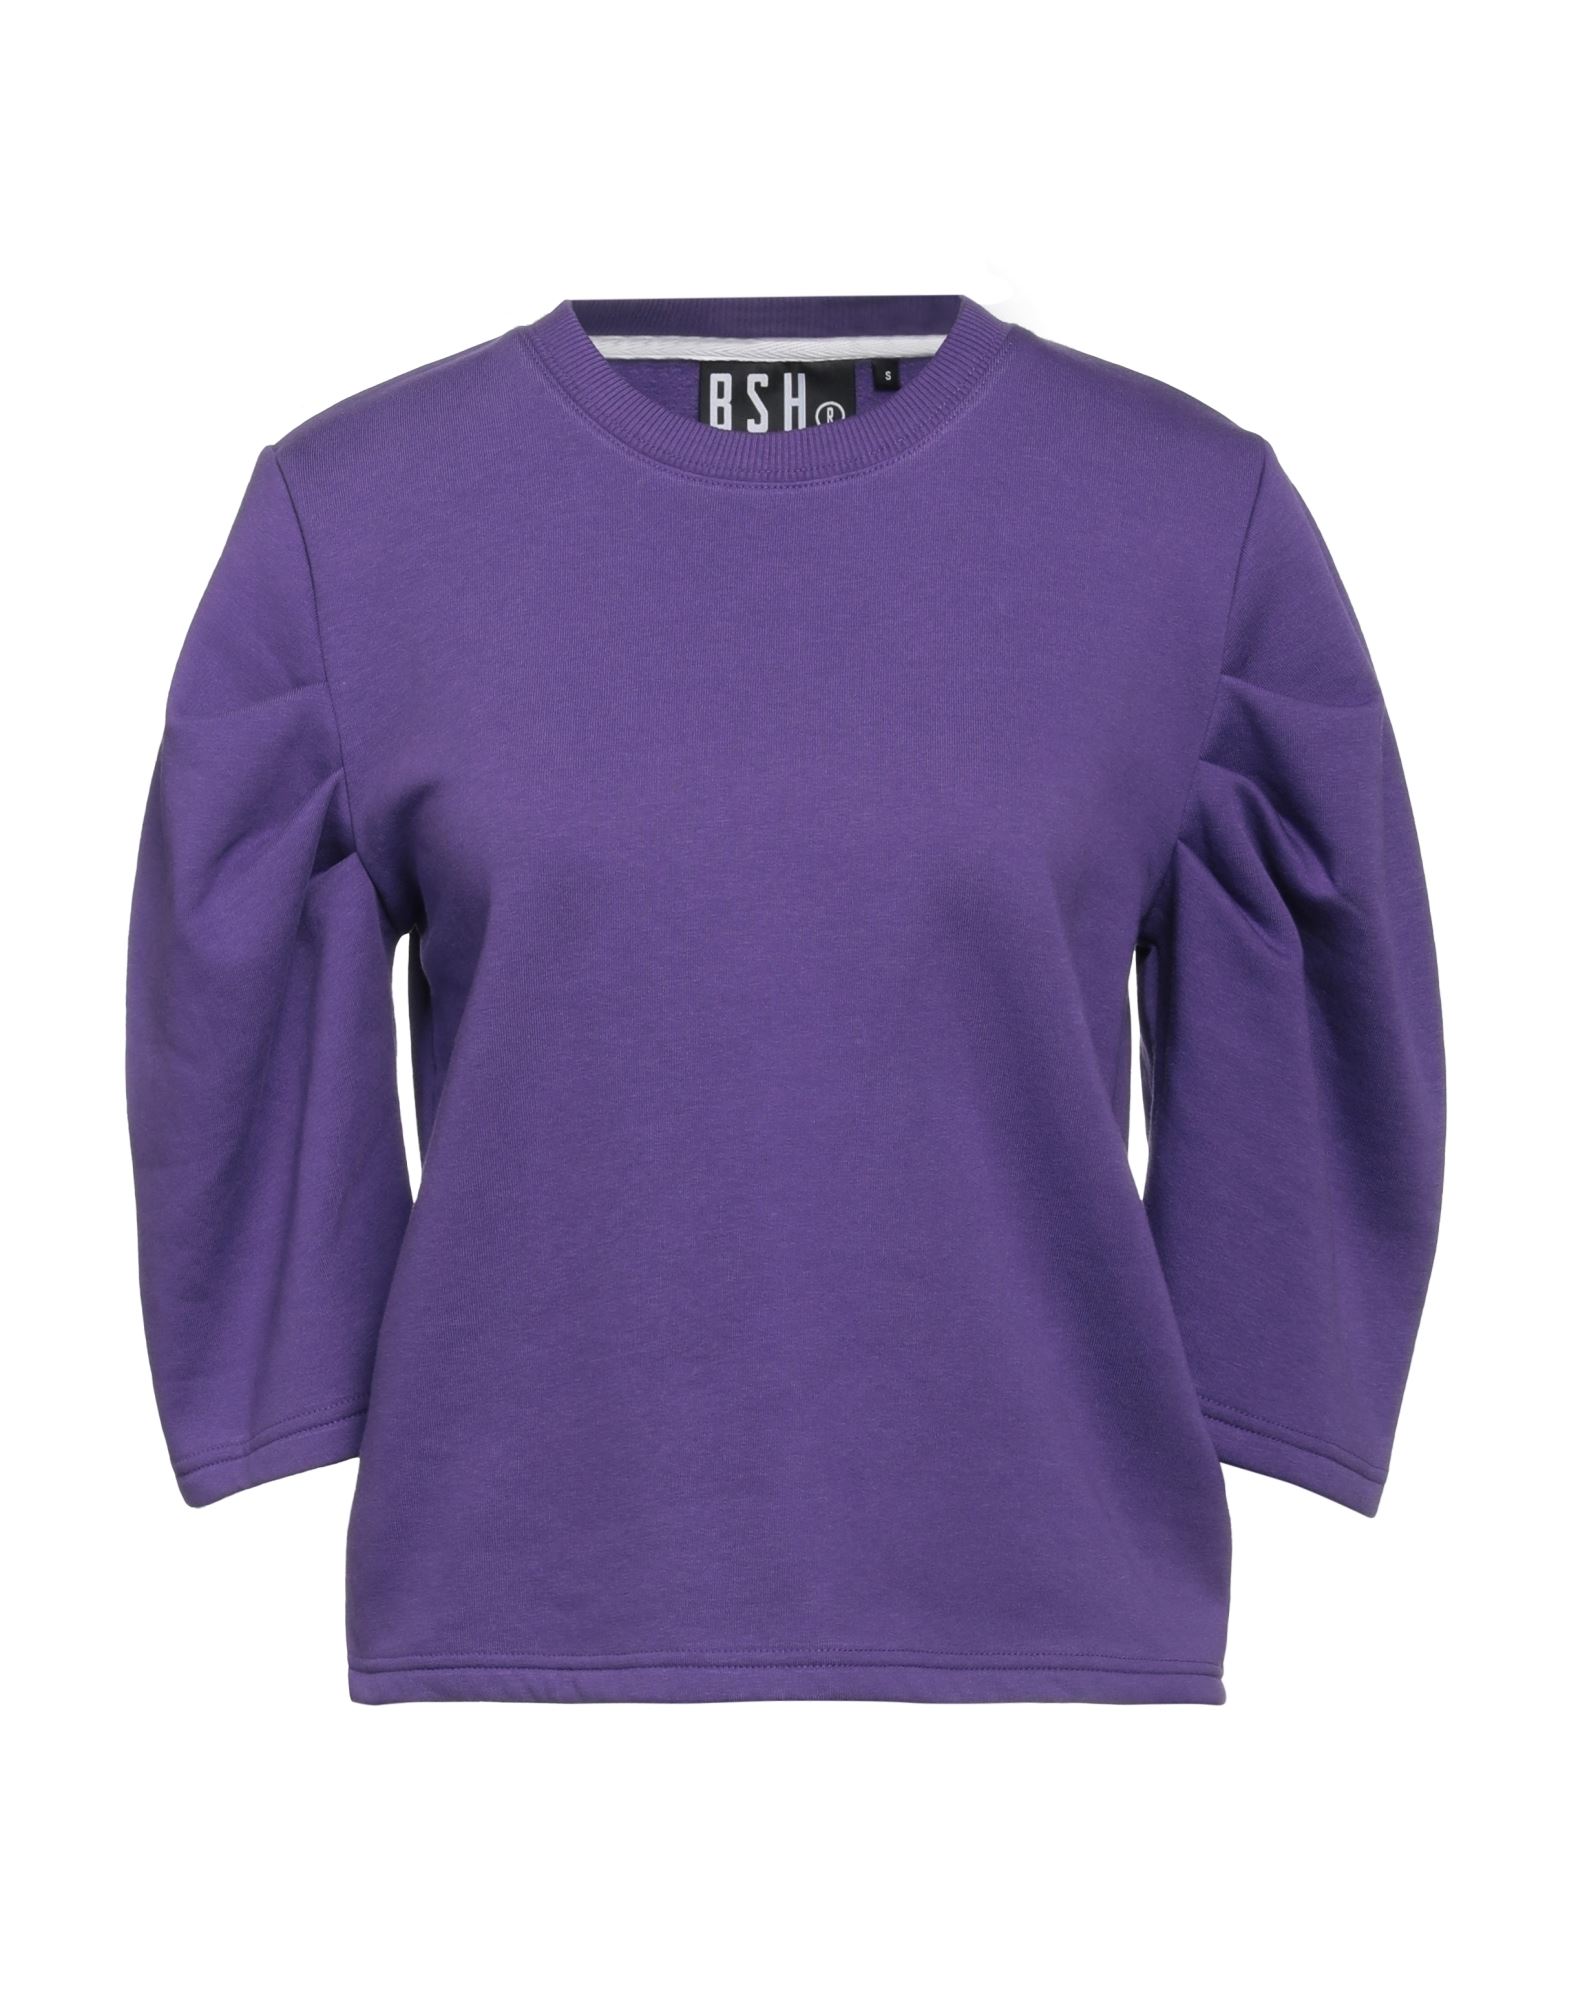 Bsh Sweatshirts In Purple